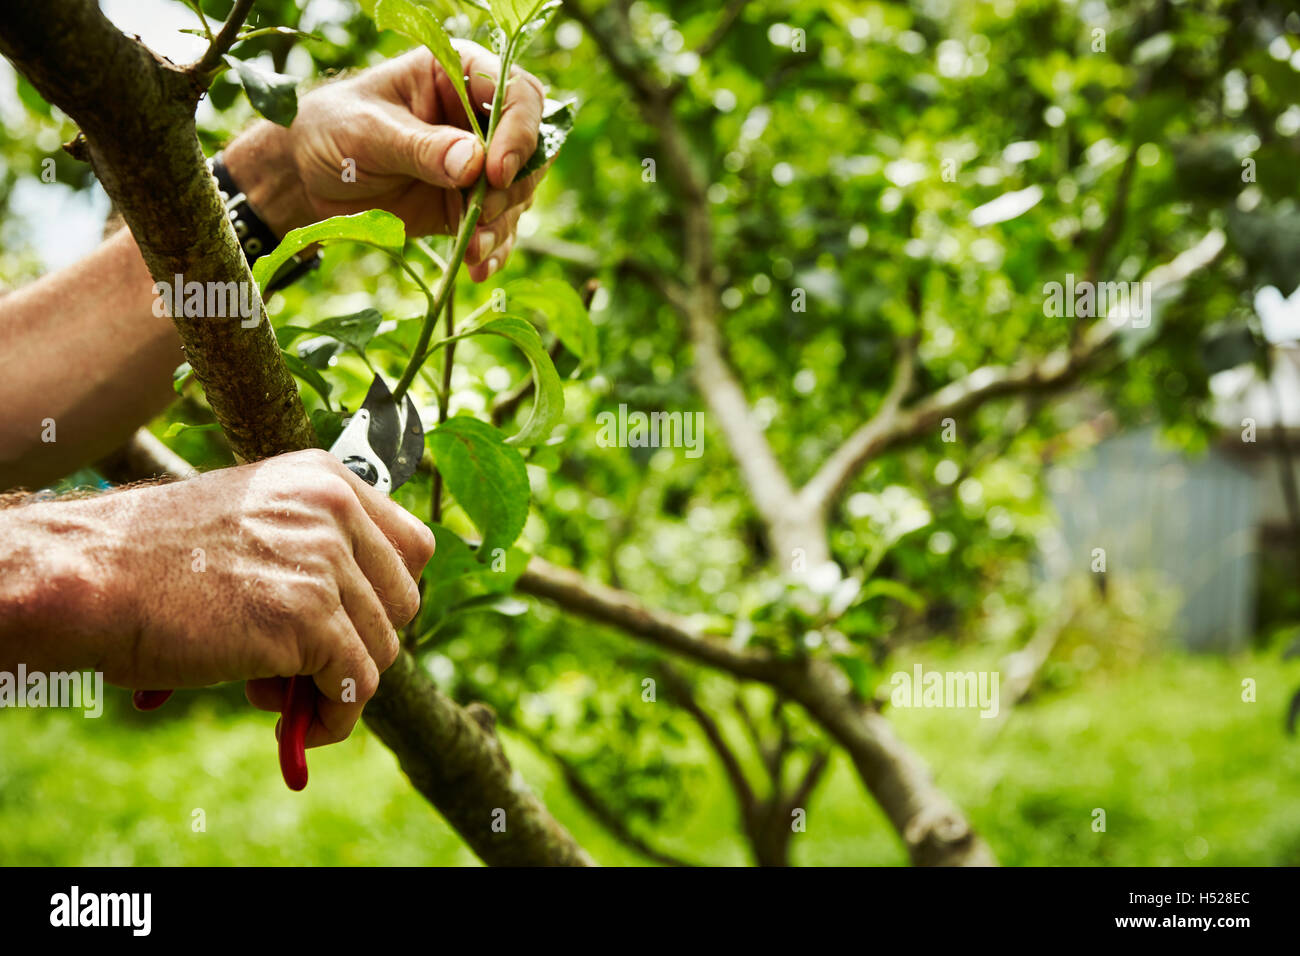 Poda de arboles frutales fotografías e imágenes de alta resolución - Alamy